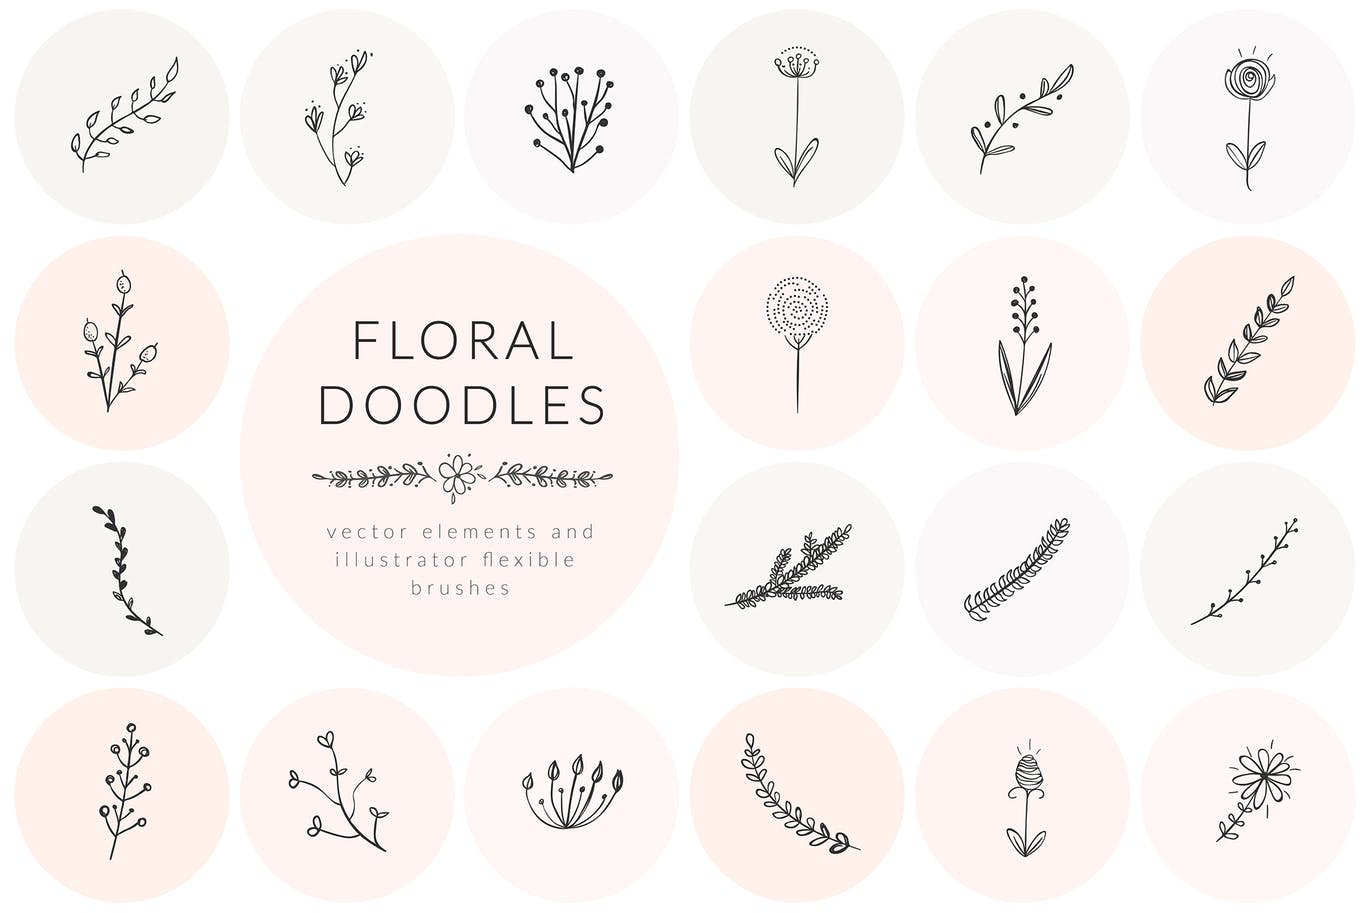 涂鸦风格手绘花卉素材集v2 Hand Drawn Floral Doodles Vol.2插图